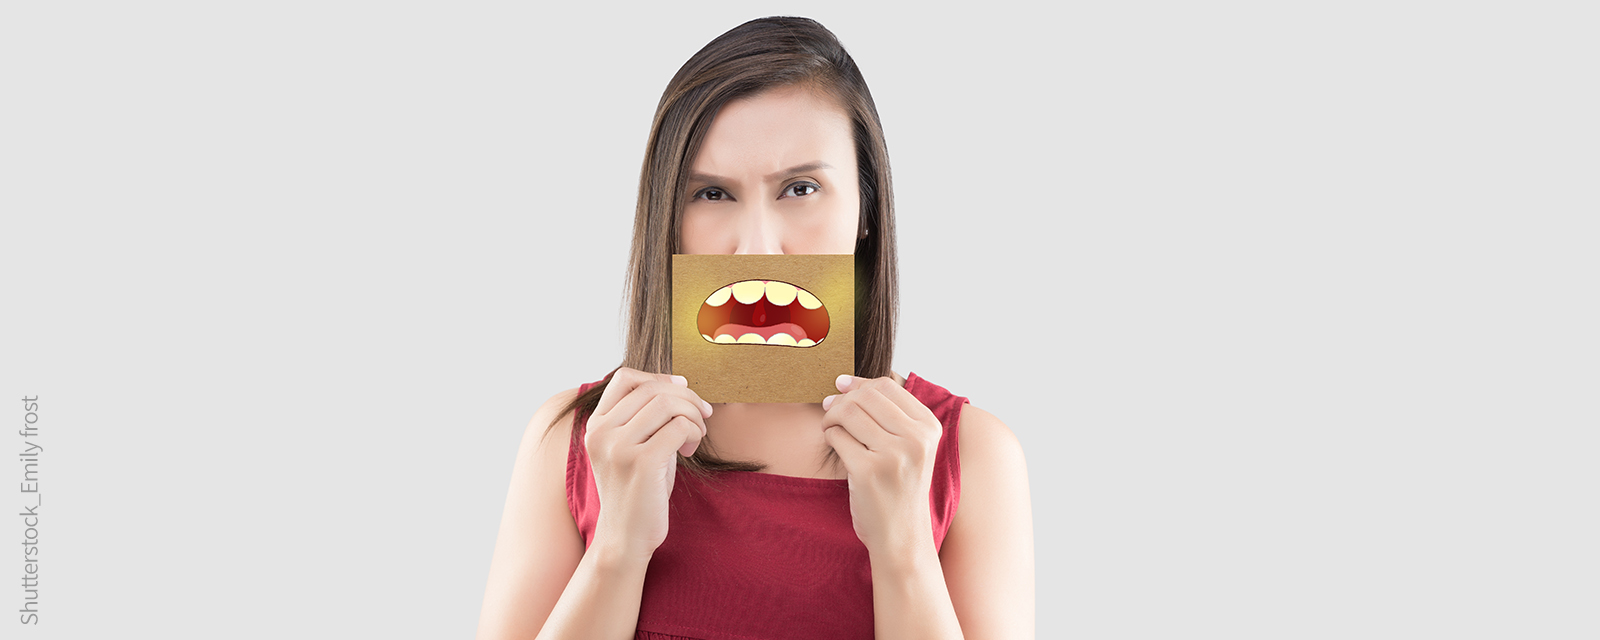 Frau hält ein Bild mit einem Mund mit gelben Zähnen vor das Gesicht